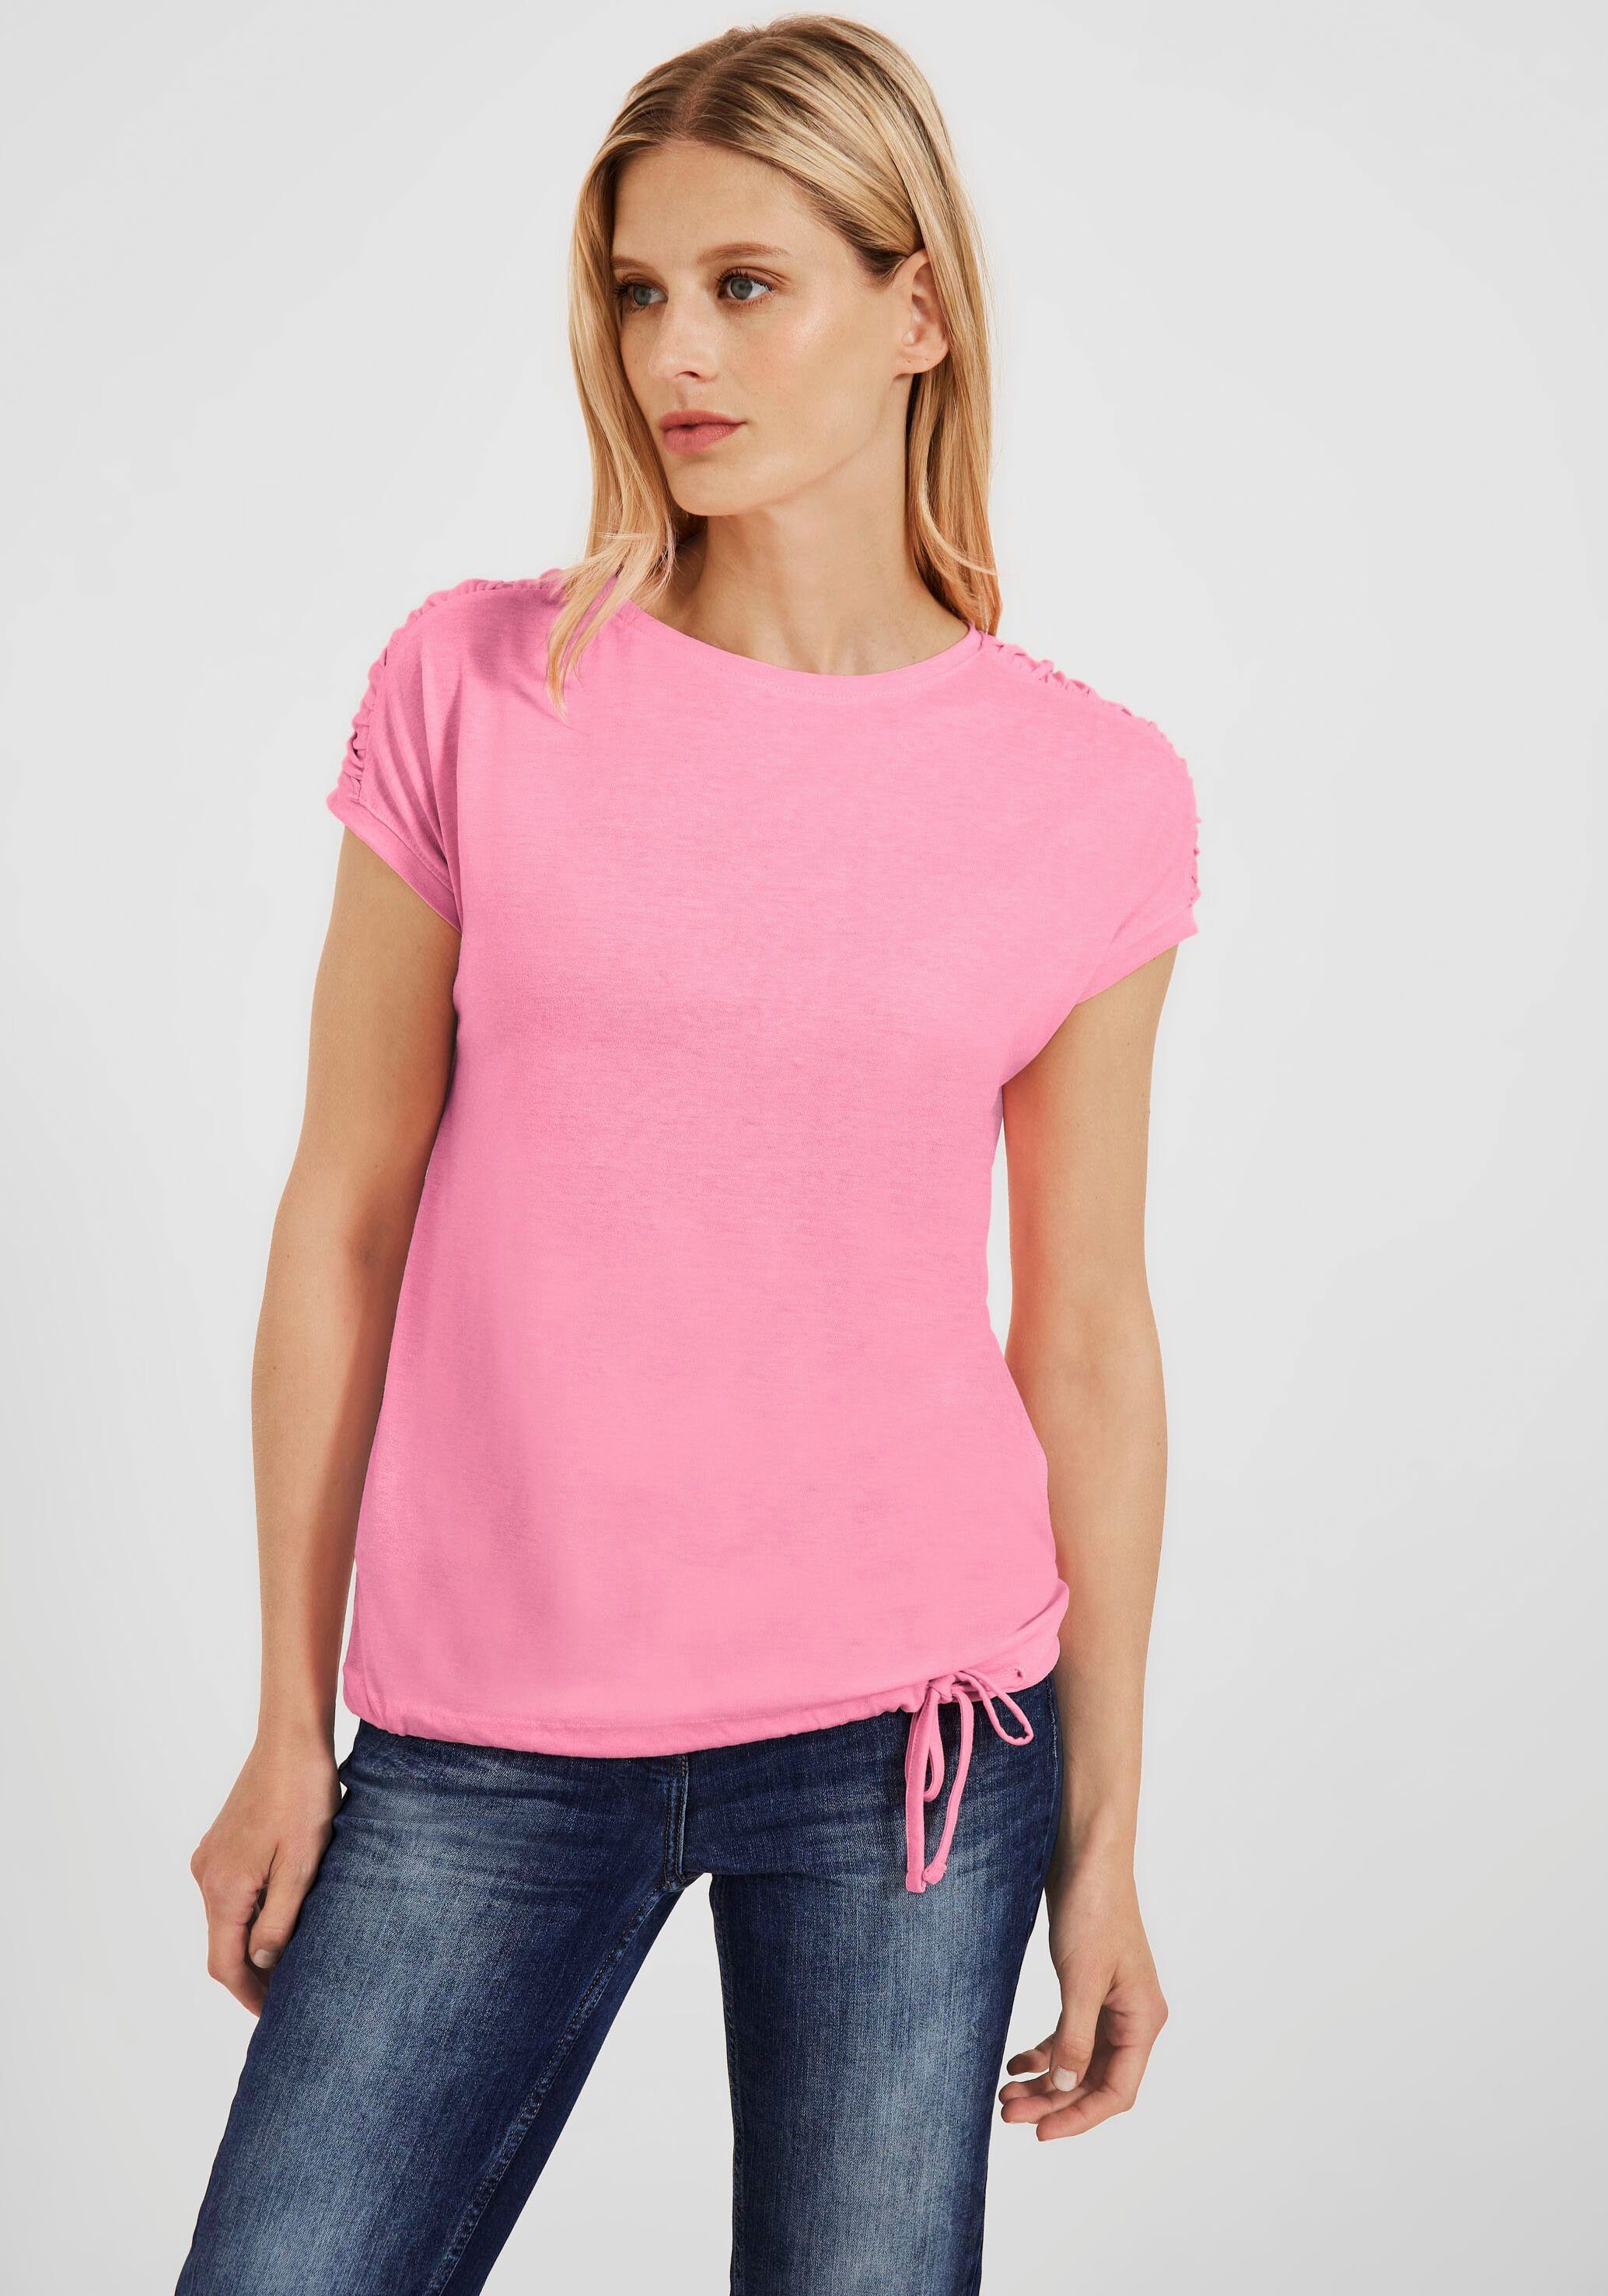 Einkaufen Cecil T-Shirt NOS Shoulder Fledermausärmeln pink soft mit Gathering S